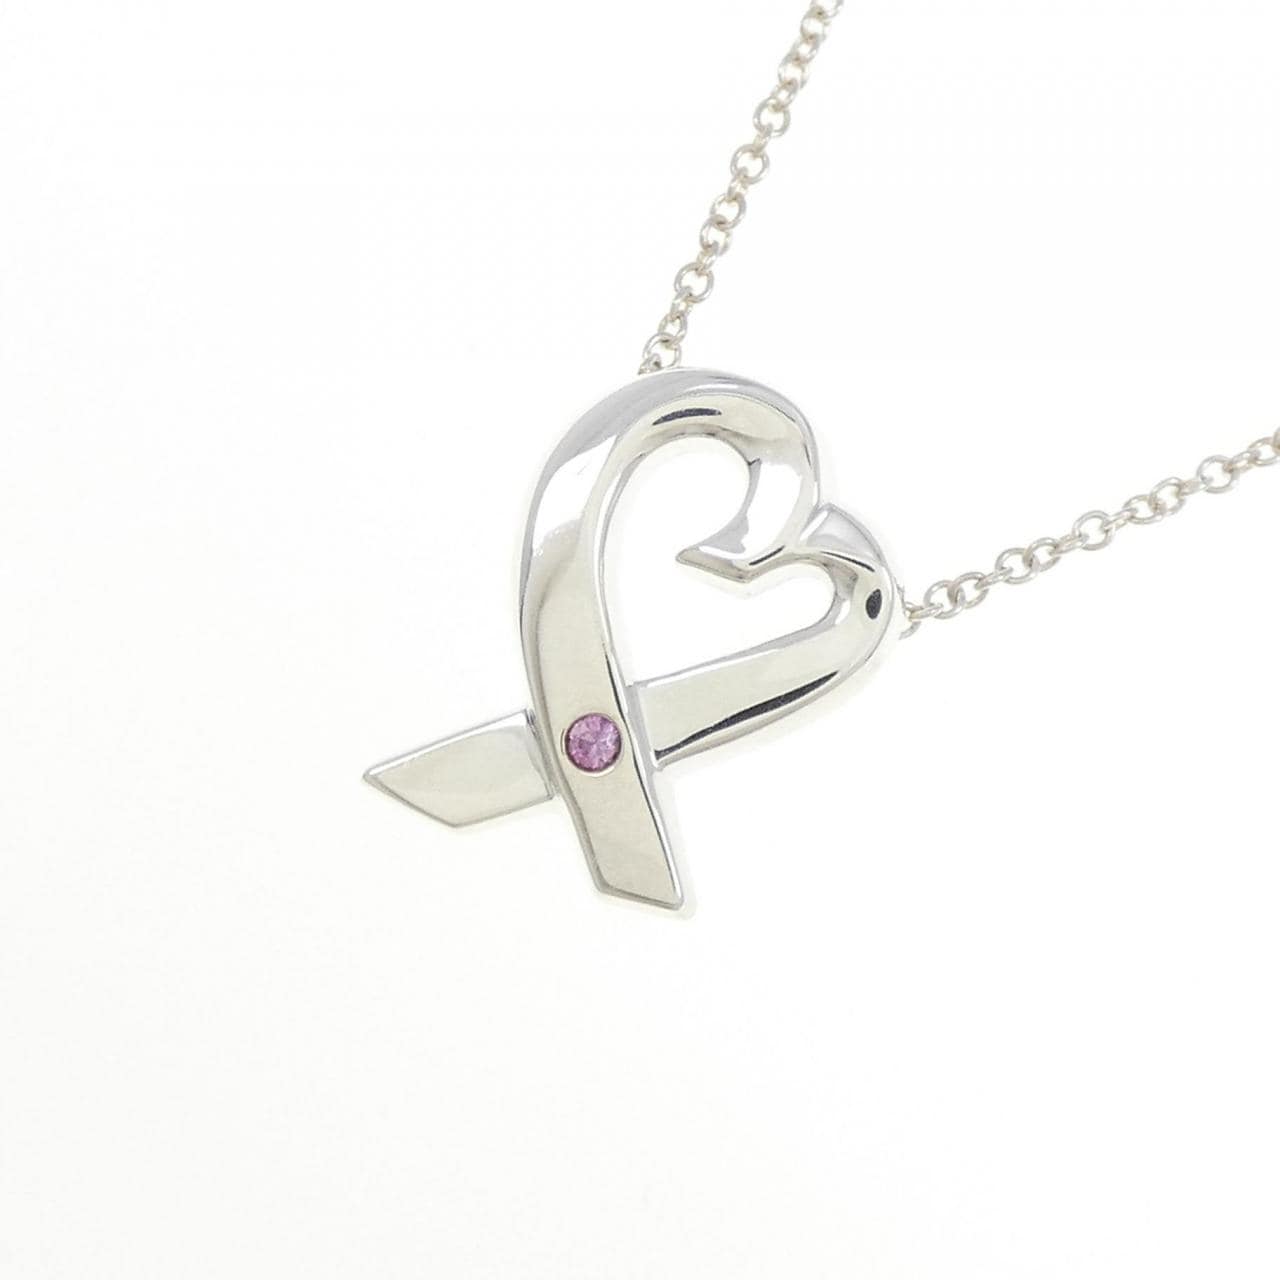 TIFFANY loving heart necklace